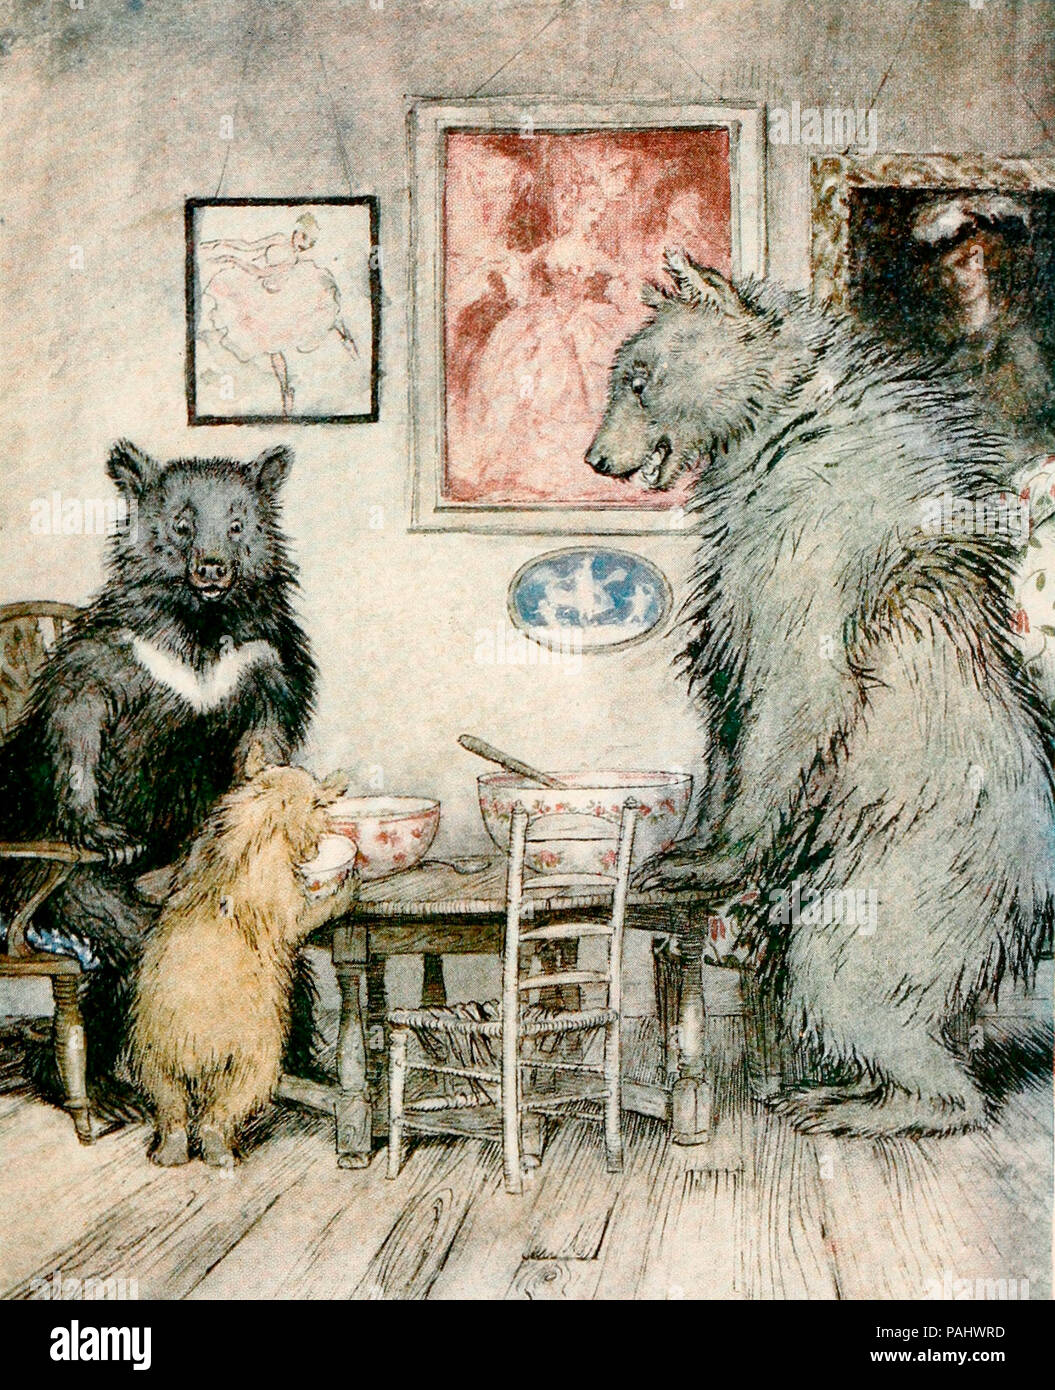 Alguien ha estado en mi gachas, y ha comido todo - Escena de Goldilocks y los tres osos. Foto de stock